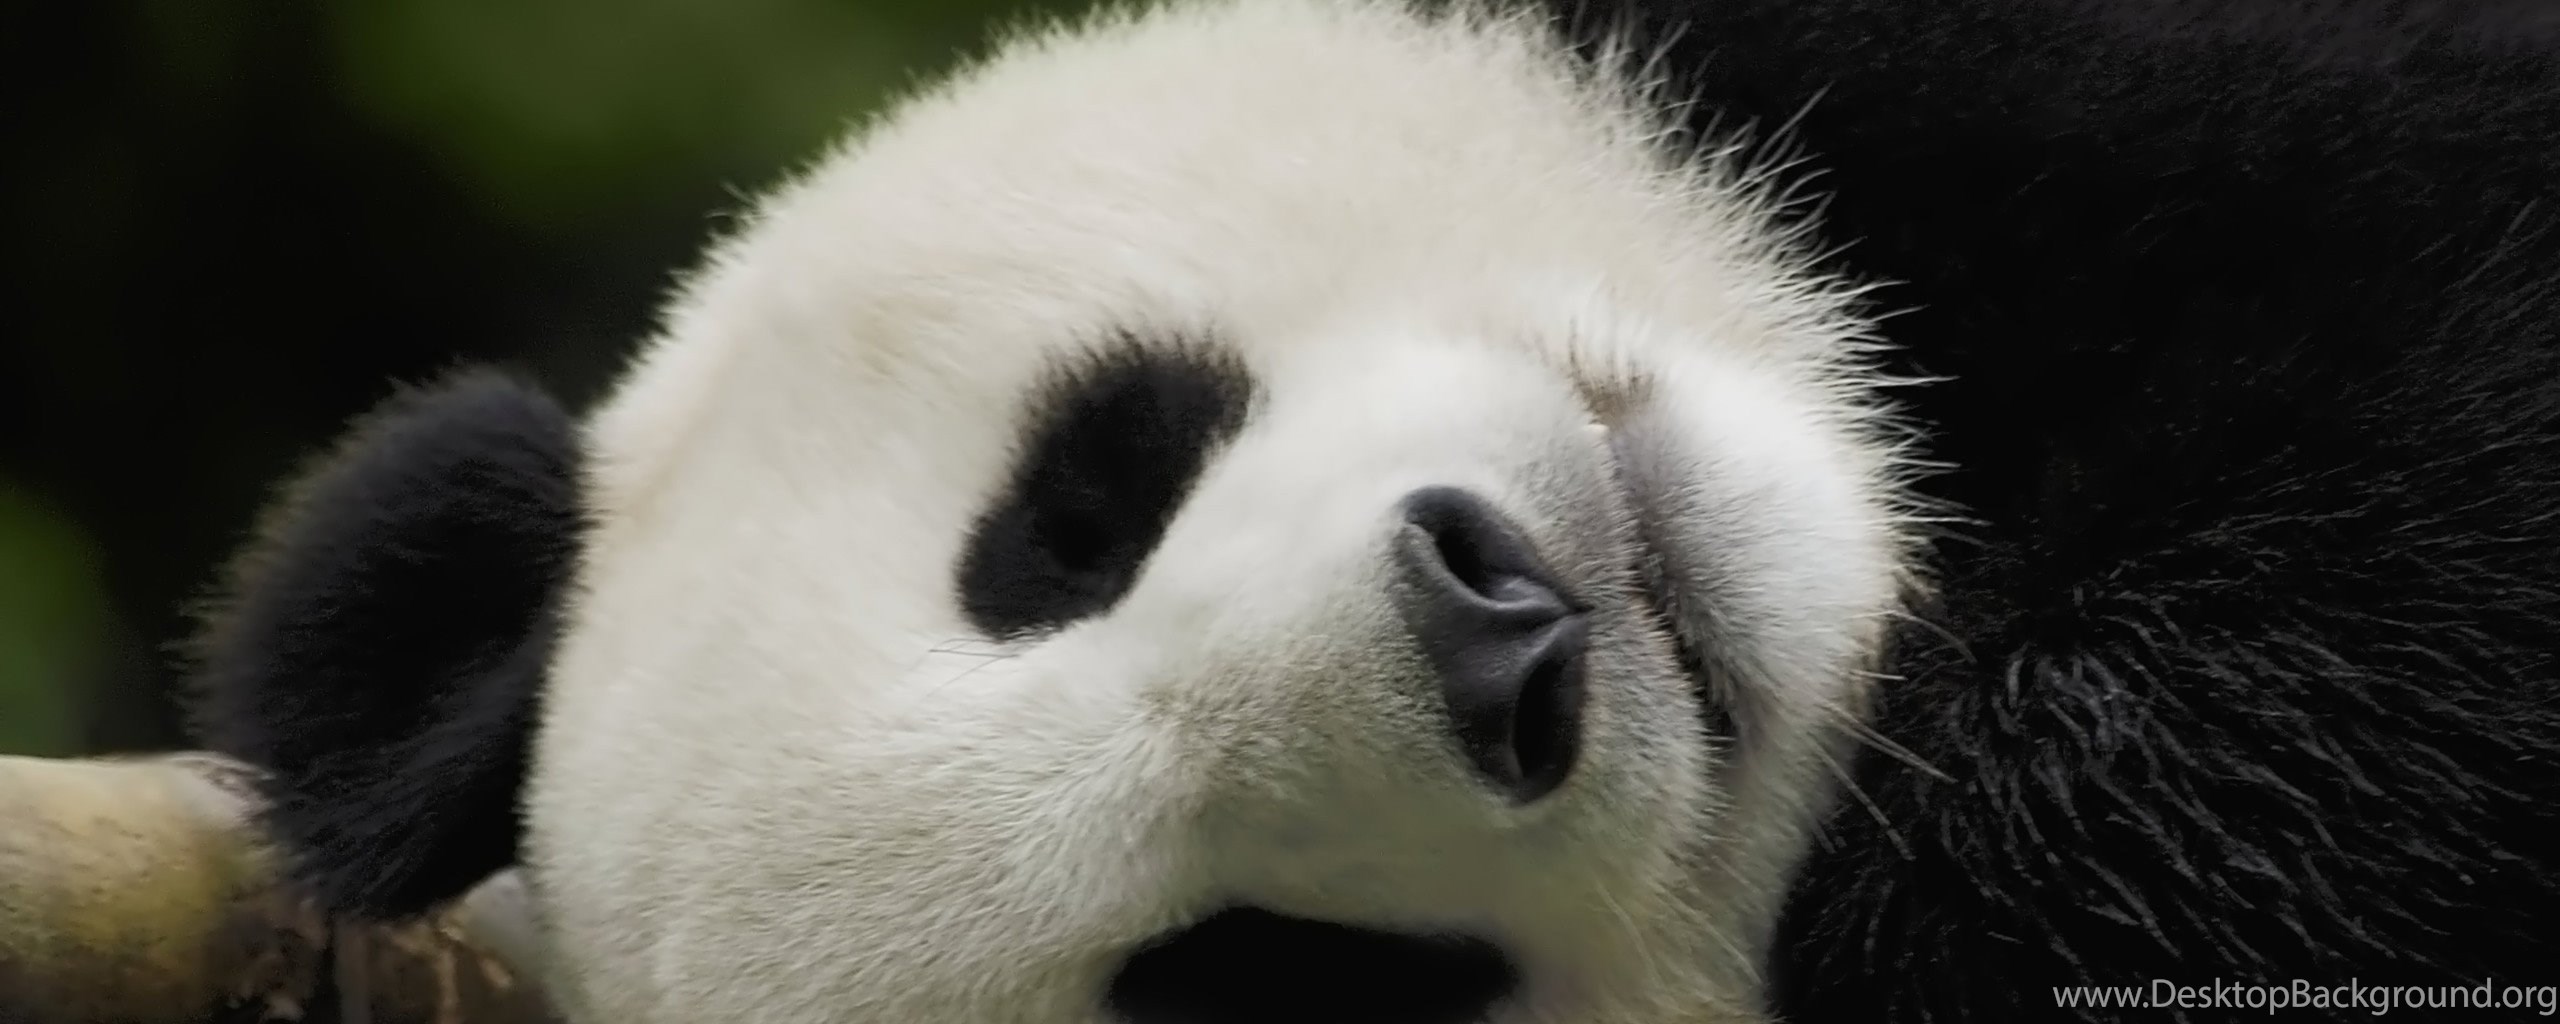 Панда без кругов. Панда без пятен. Панда без черных кругов. Панда без пятен вокруг глаз. Панда без черных кругов под глазами.